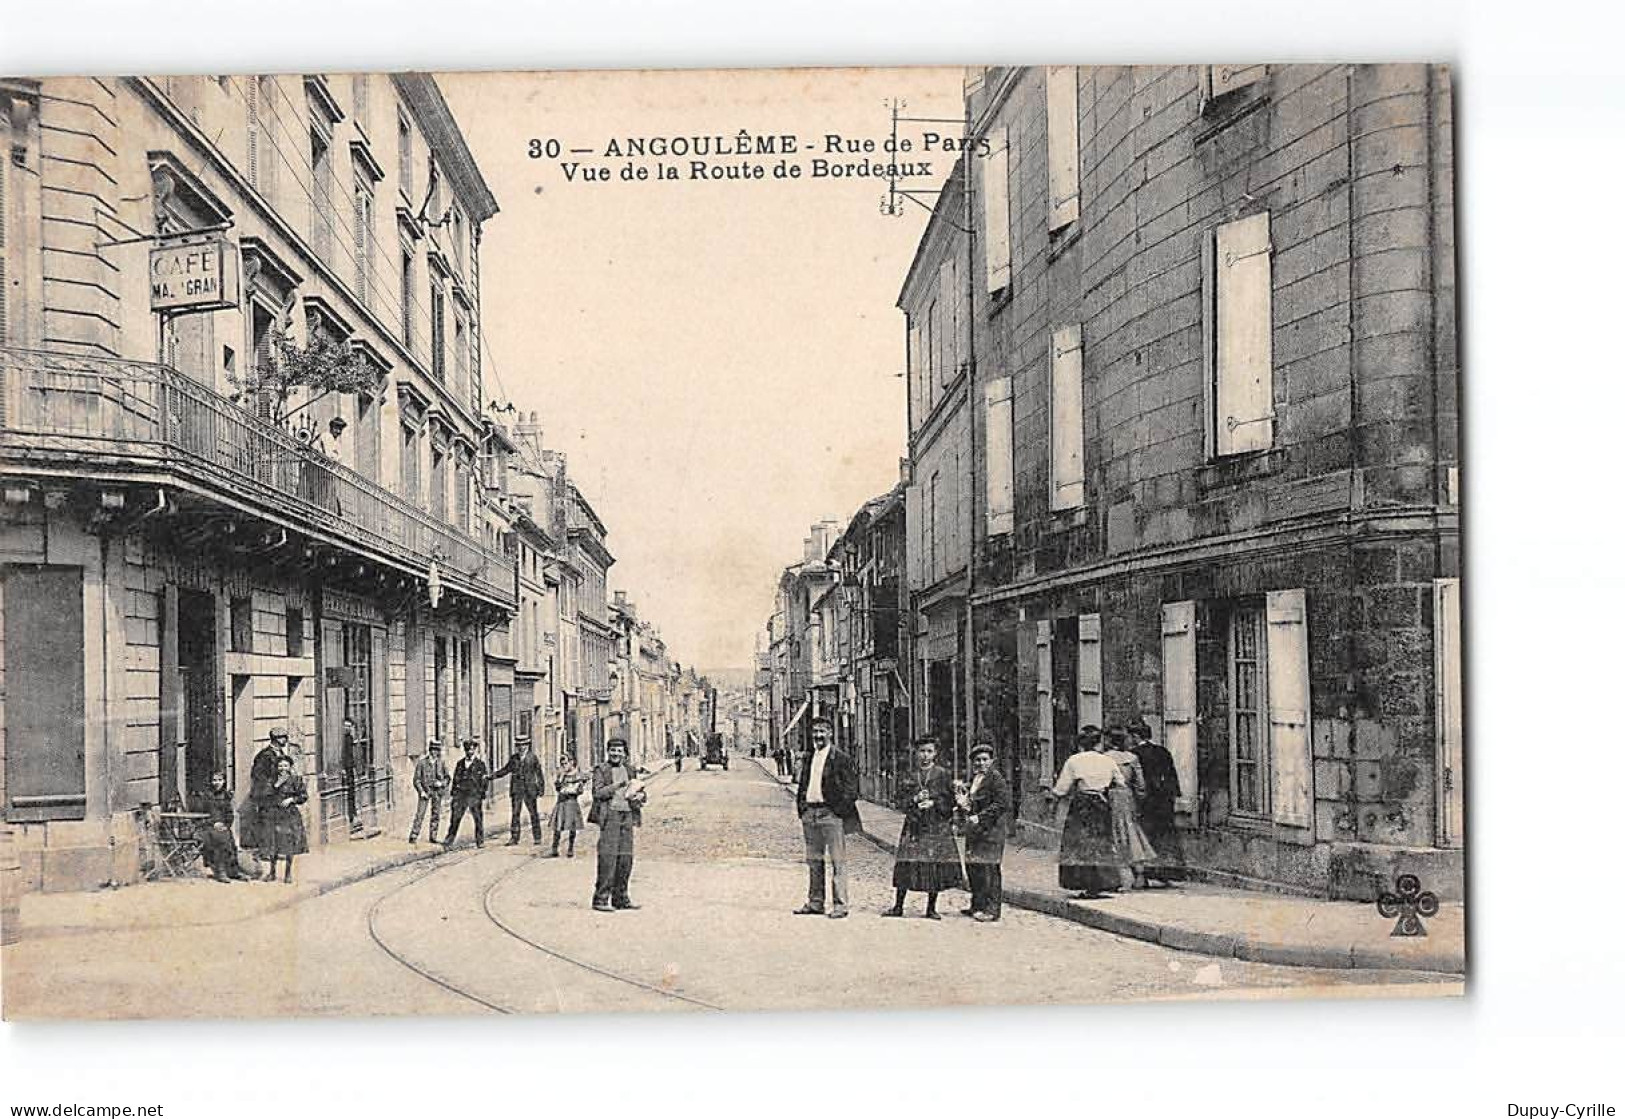 ANGOULEME - Rue De Paris - Vue De La Route De Bordeaux - Très Bon état - Angouleme